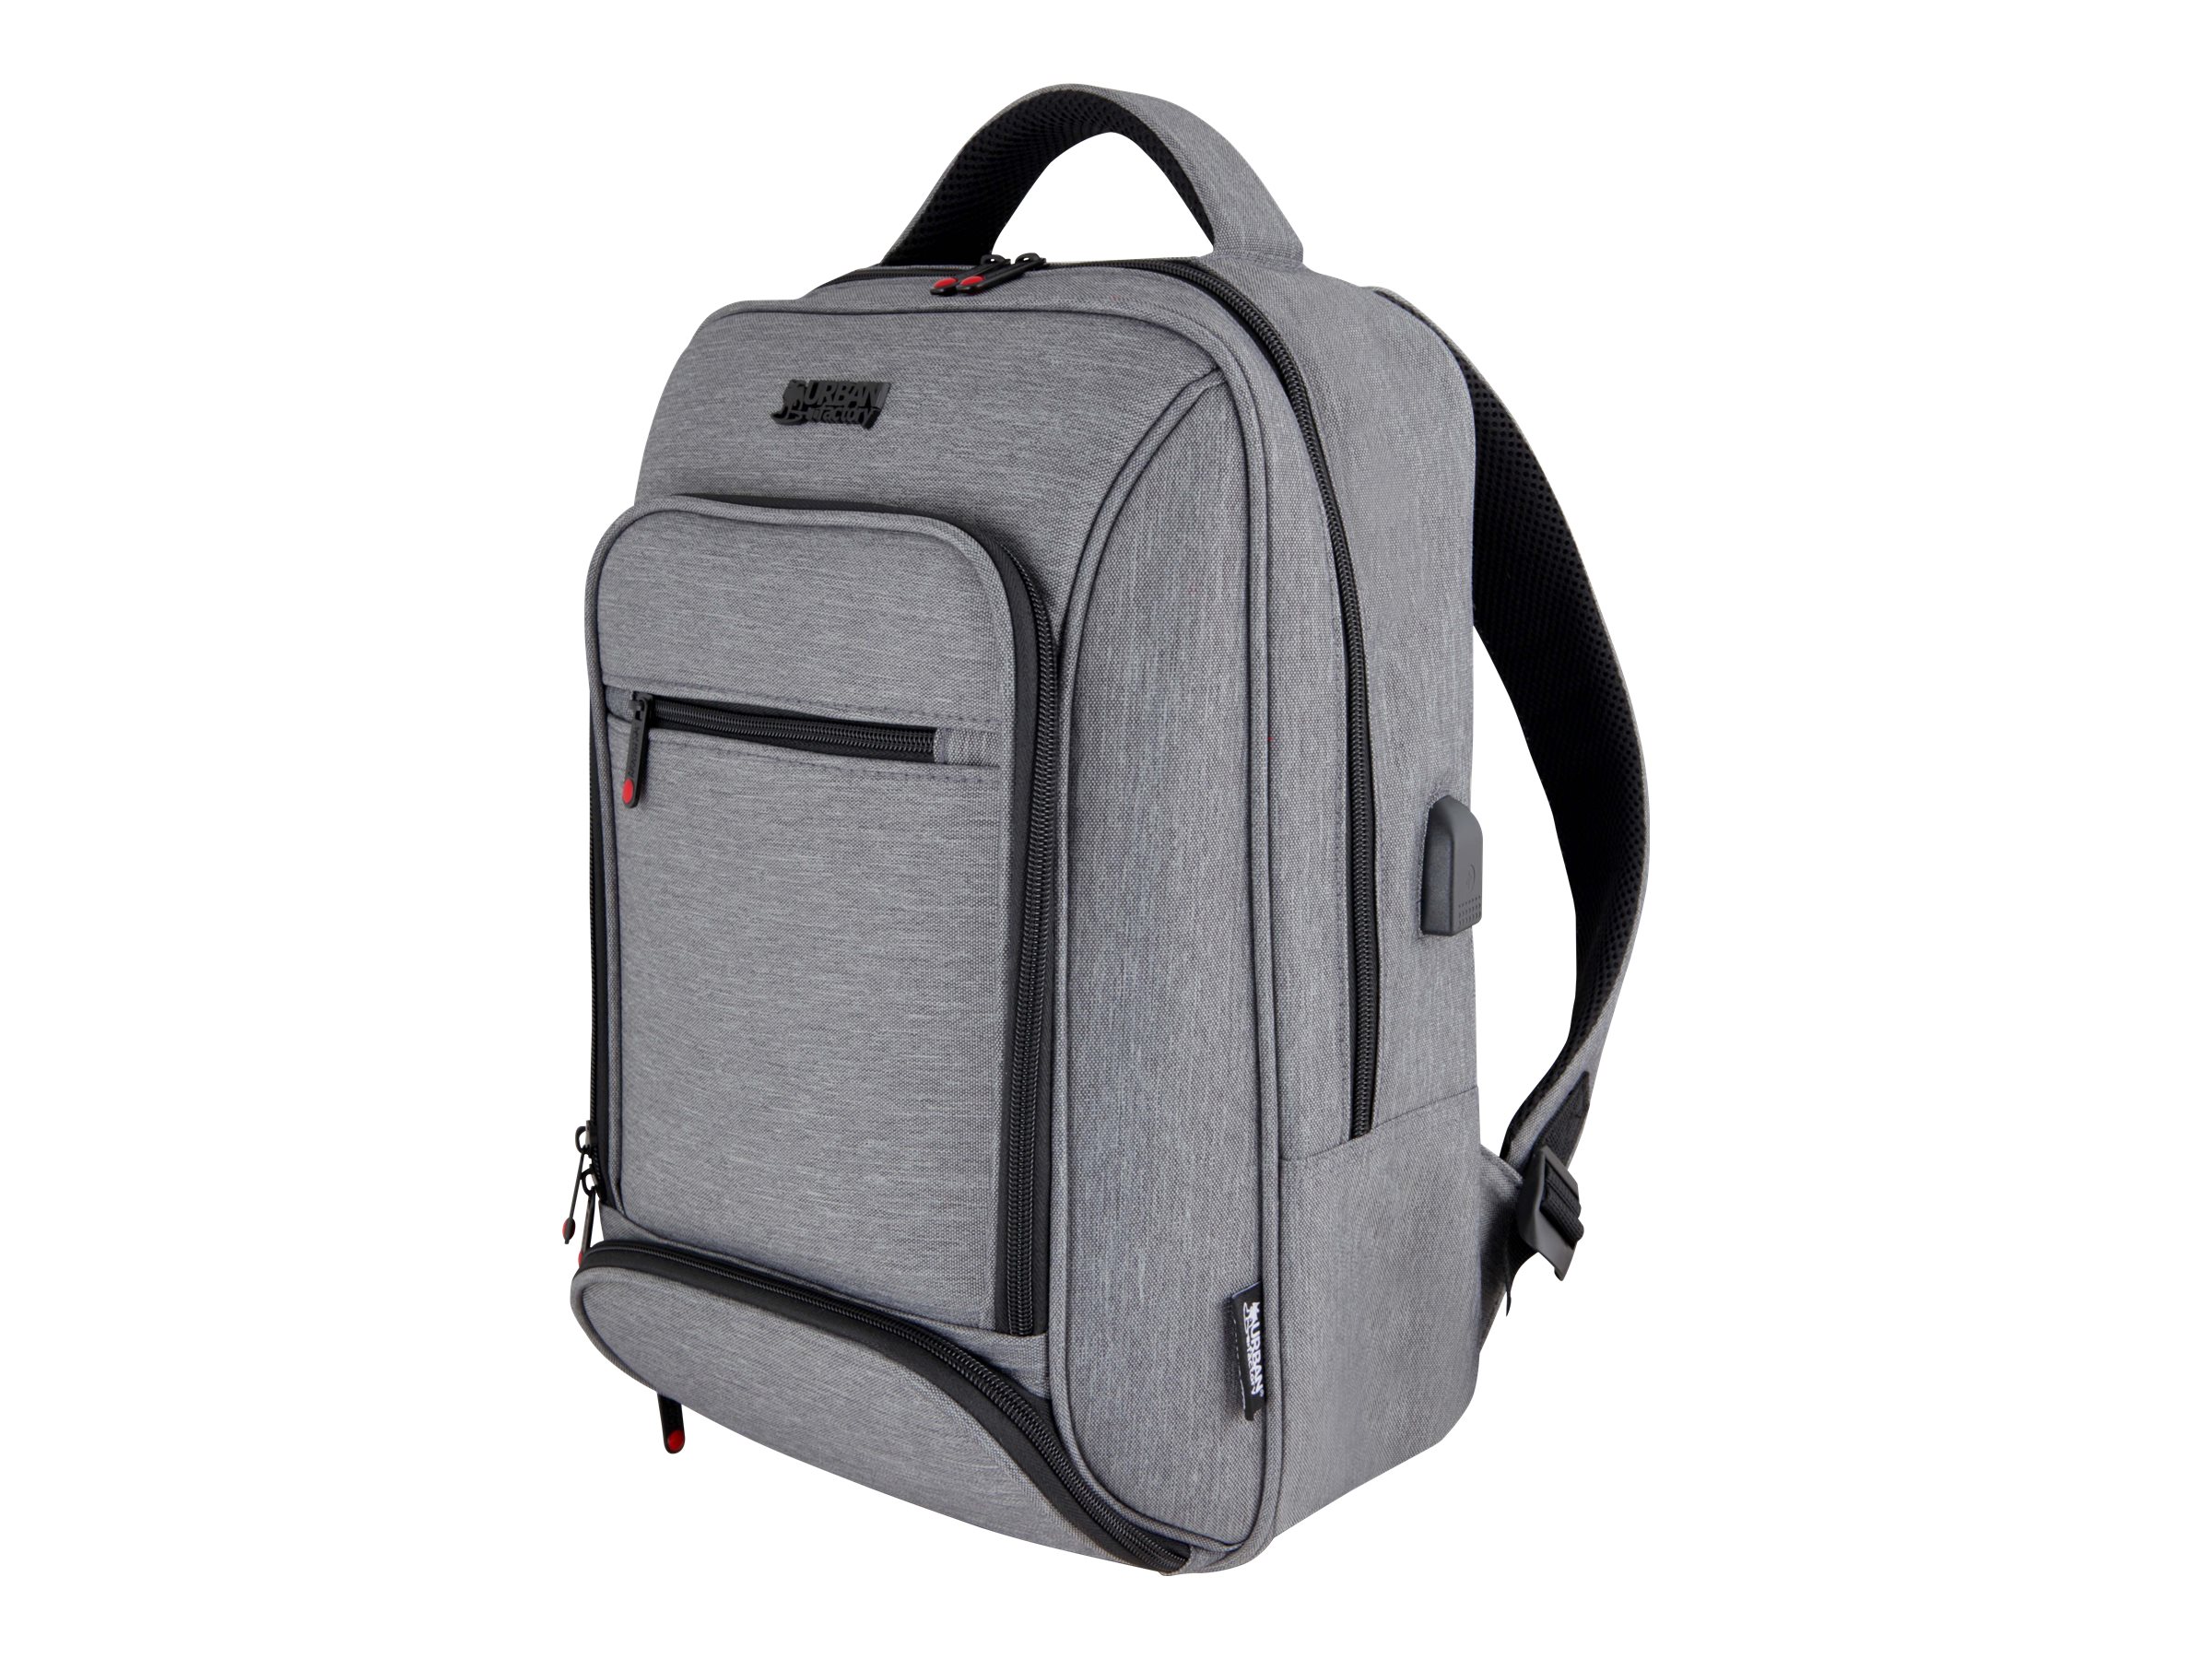 Urban Factory Mixee Edition Backpack 15.6" Grey - Sac à dos pour ordinateur portable - 15.6" - gris, noir - MCE15UF - Sacoches pour ordinateur portable